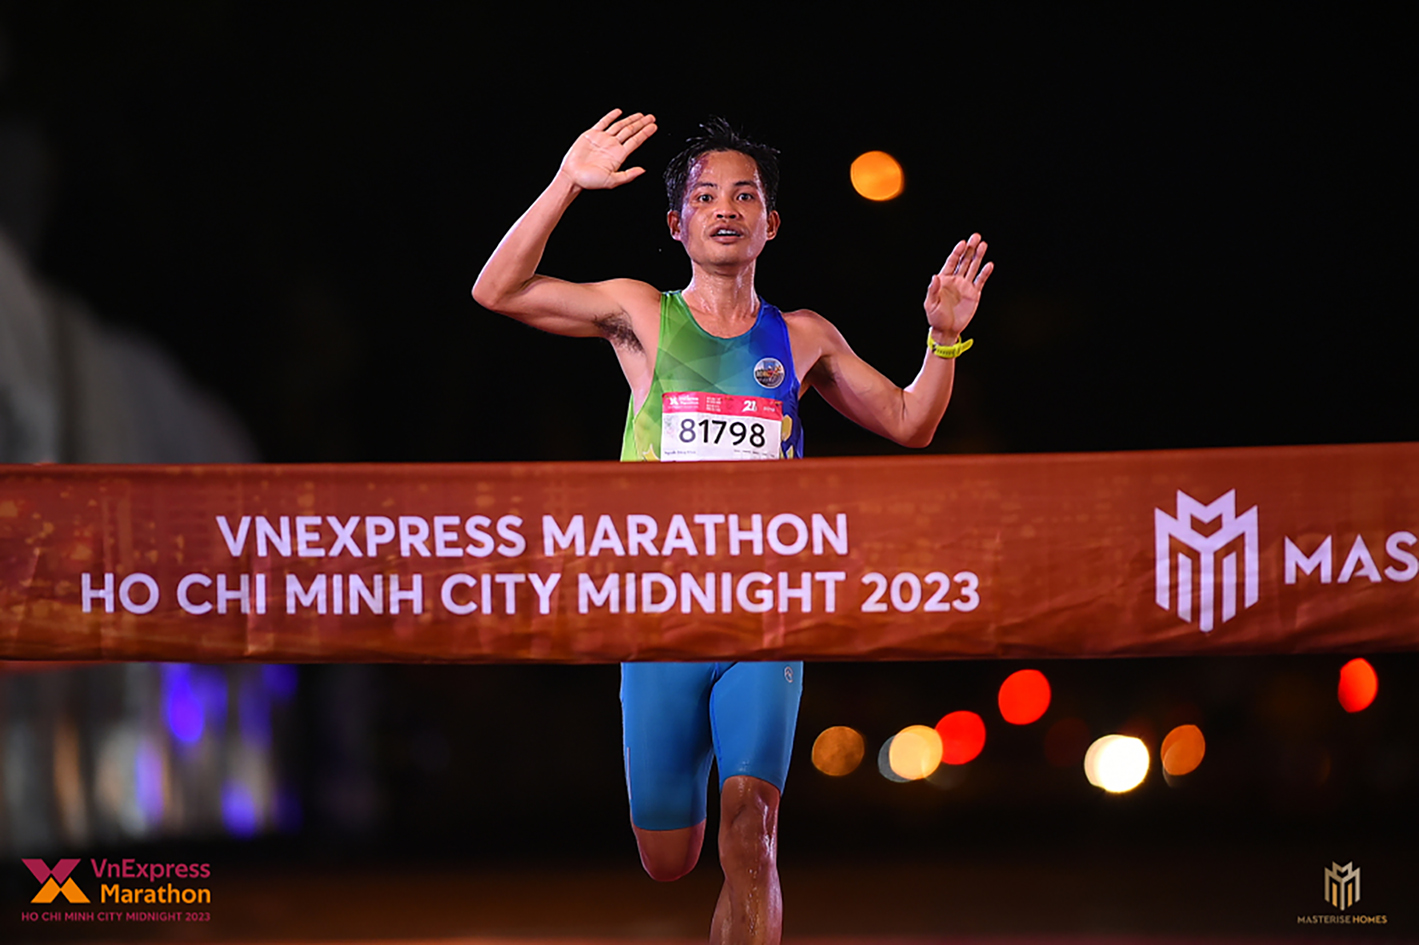 Nguyễn Đăng Khoa cán đích đầu tiên cự ly 21km tại giải chạy đêm VNExpress Marathon Ho Chi Minh City Midnight 2023. (Ảnh do nhân vật cung cấp)